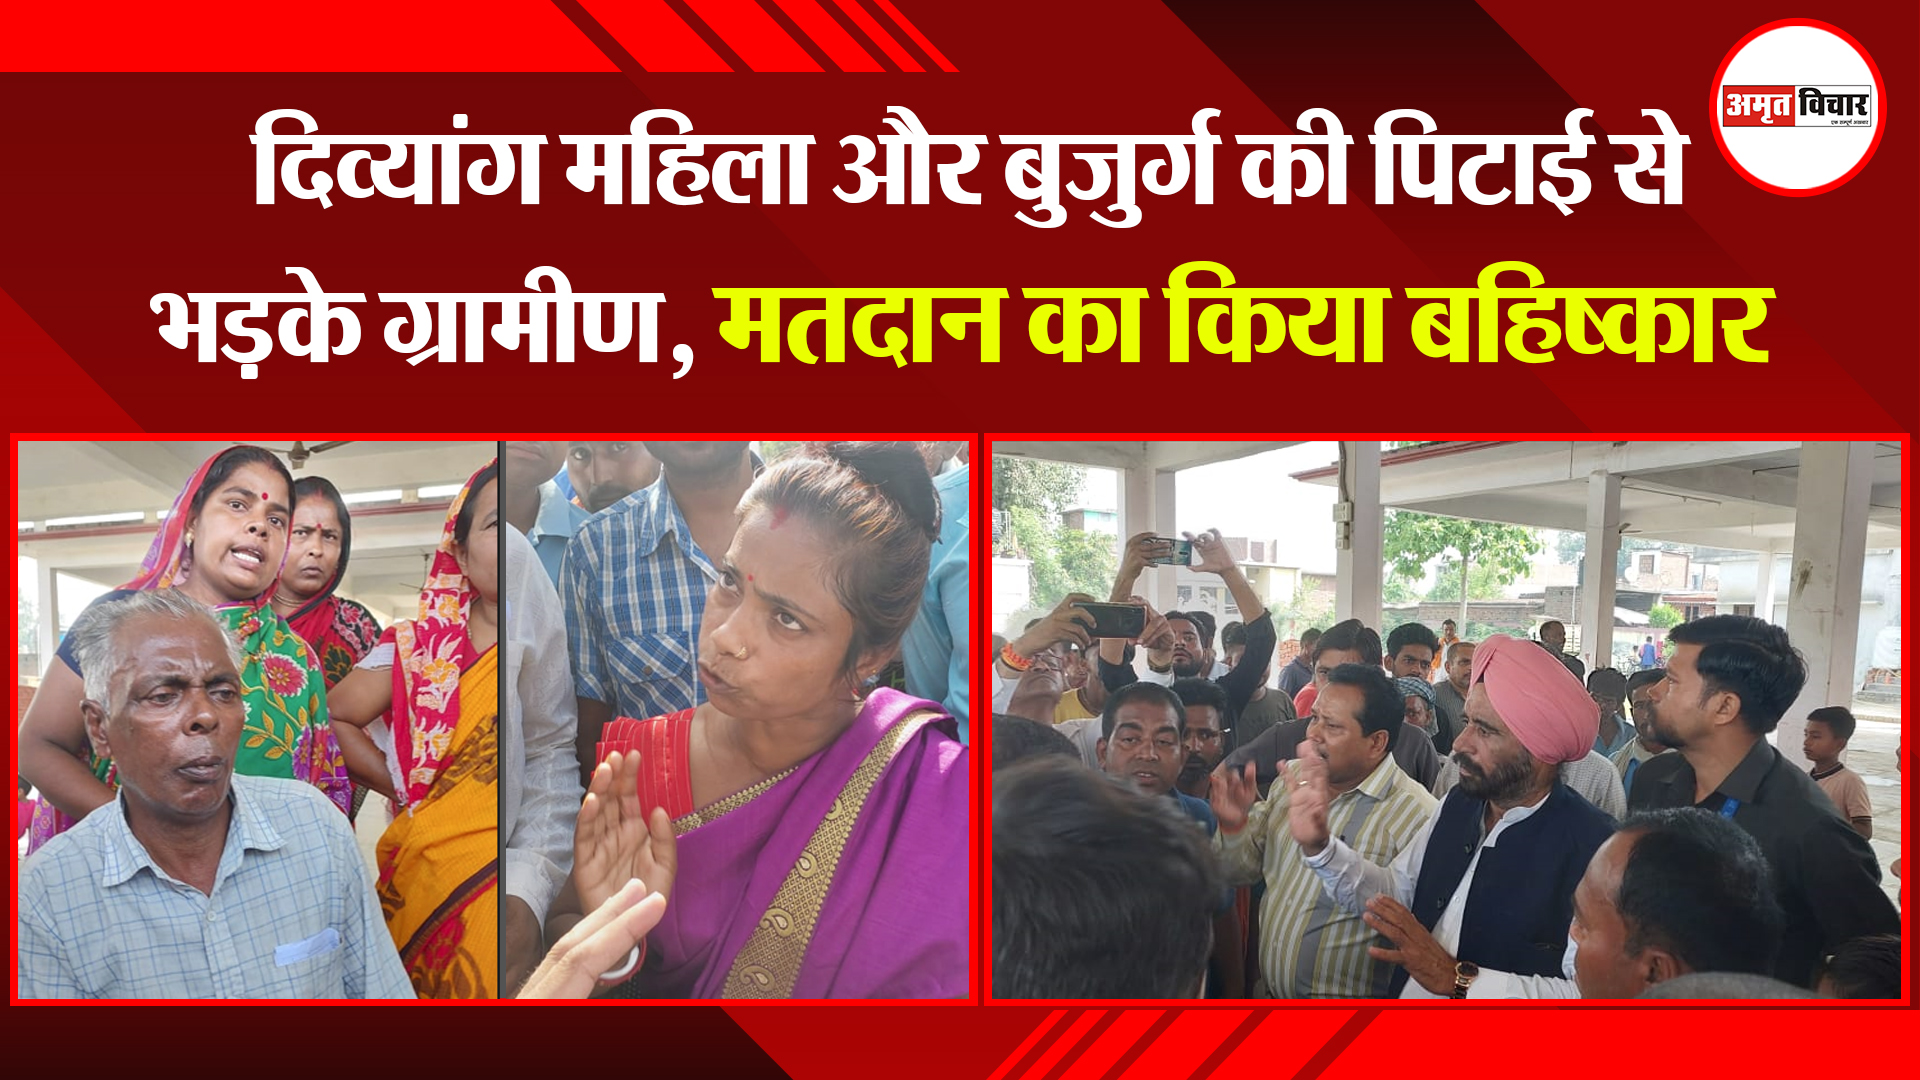 रामपुर: दिव्यांग महिला और बुजुर्ग की पिटाई से भड़के ग्रामीण, मतदान का किया बहिष्कार